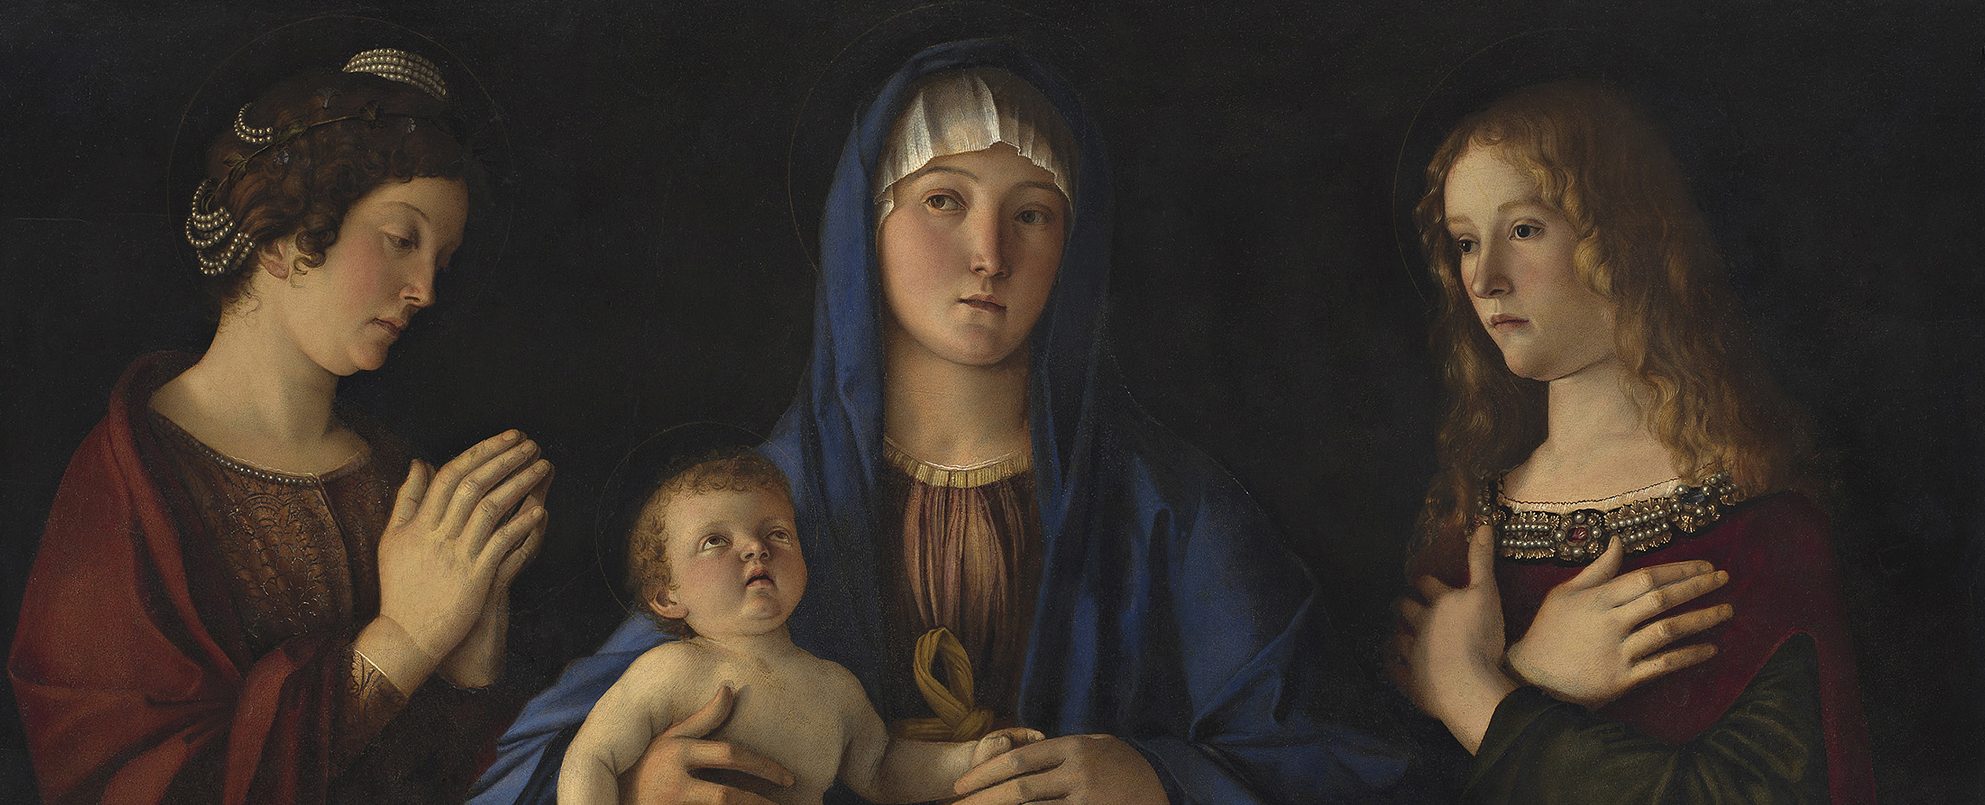 La National Gallery descubre la relación entre Mantegna y Bellini